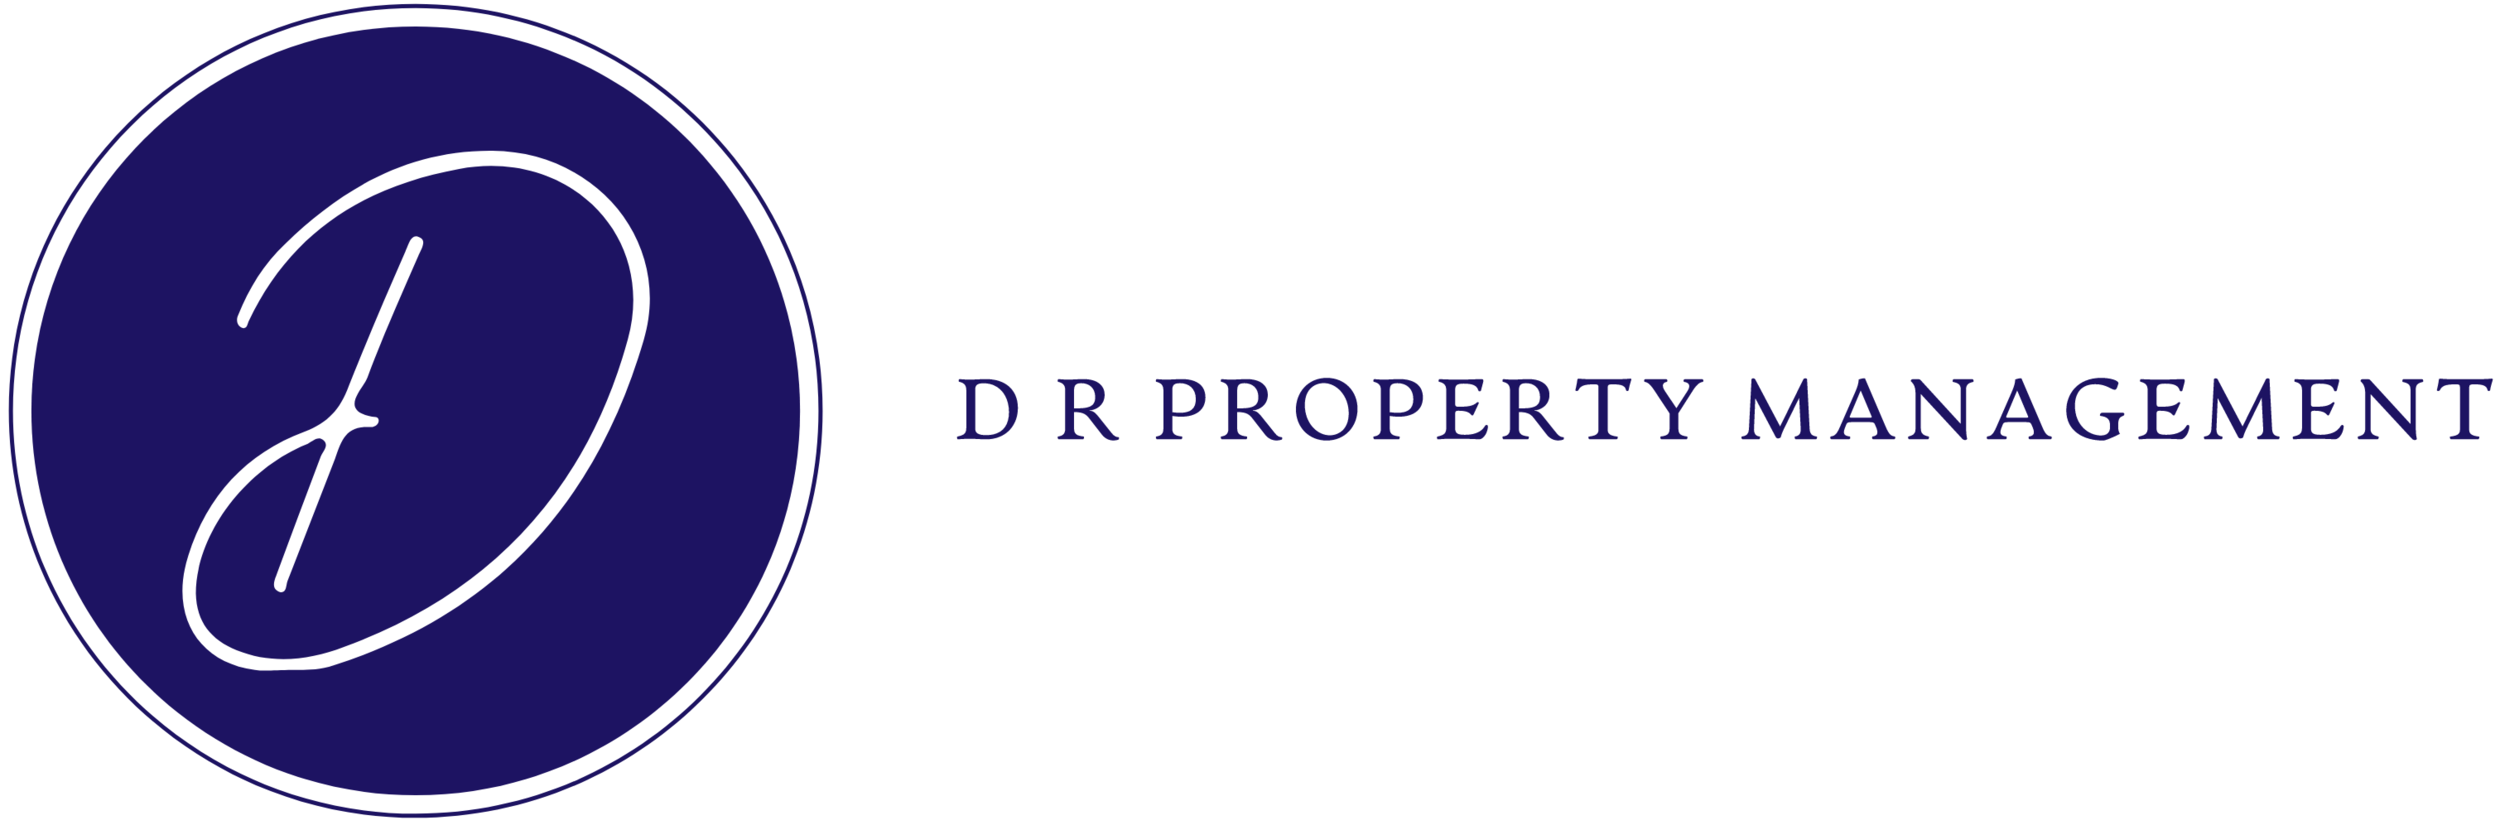 D R Property Management